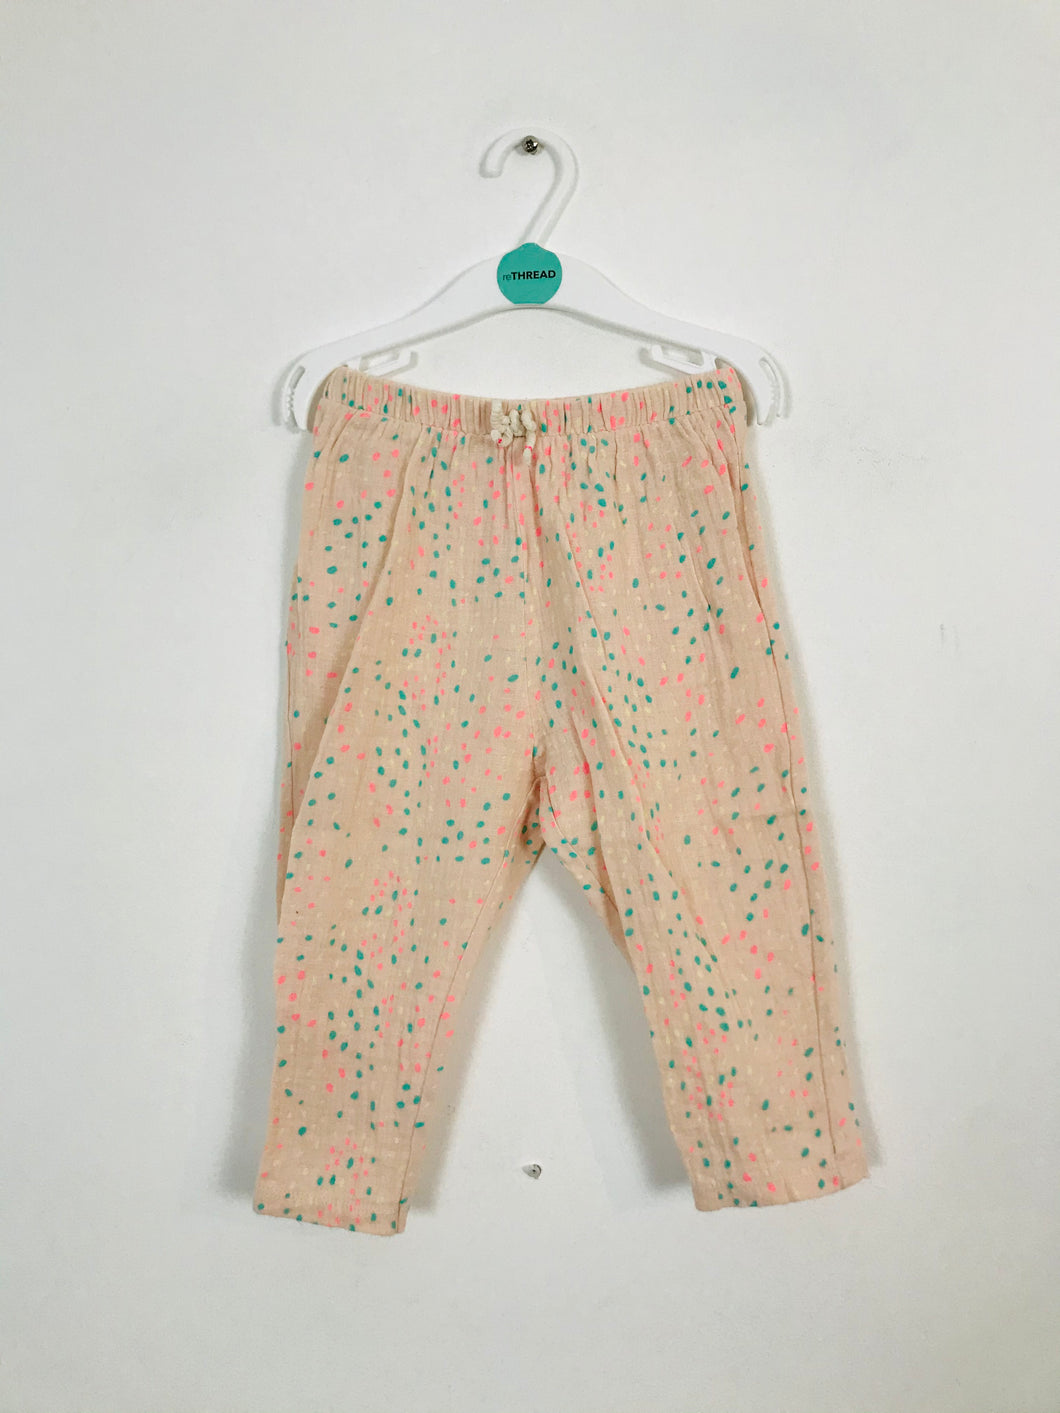 Zara Kid’s Multicoloured Spot Leggings | 18-24 Months | Pink